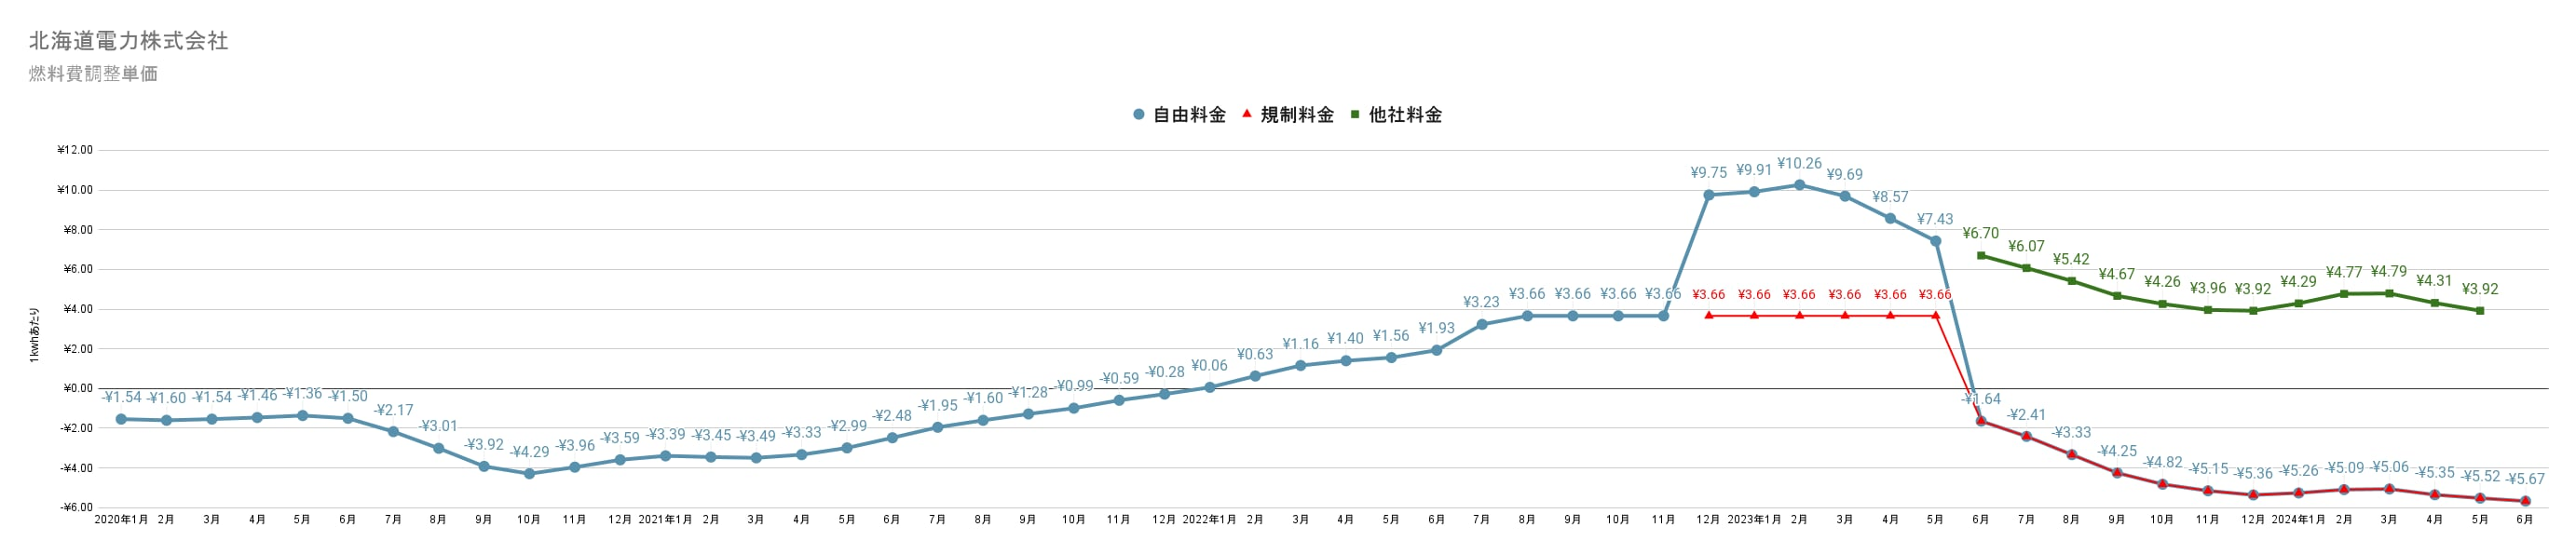 北海道電力の燃料費調整額単価　過去3年間の推移グラフ